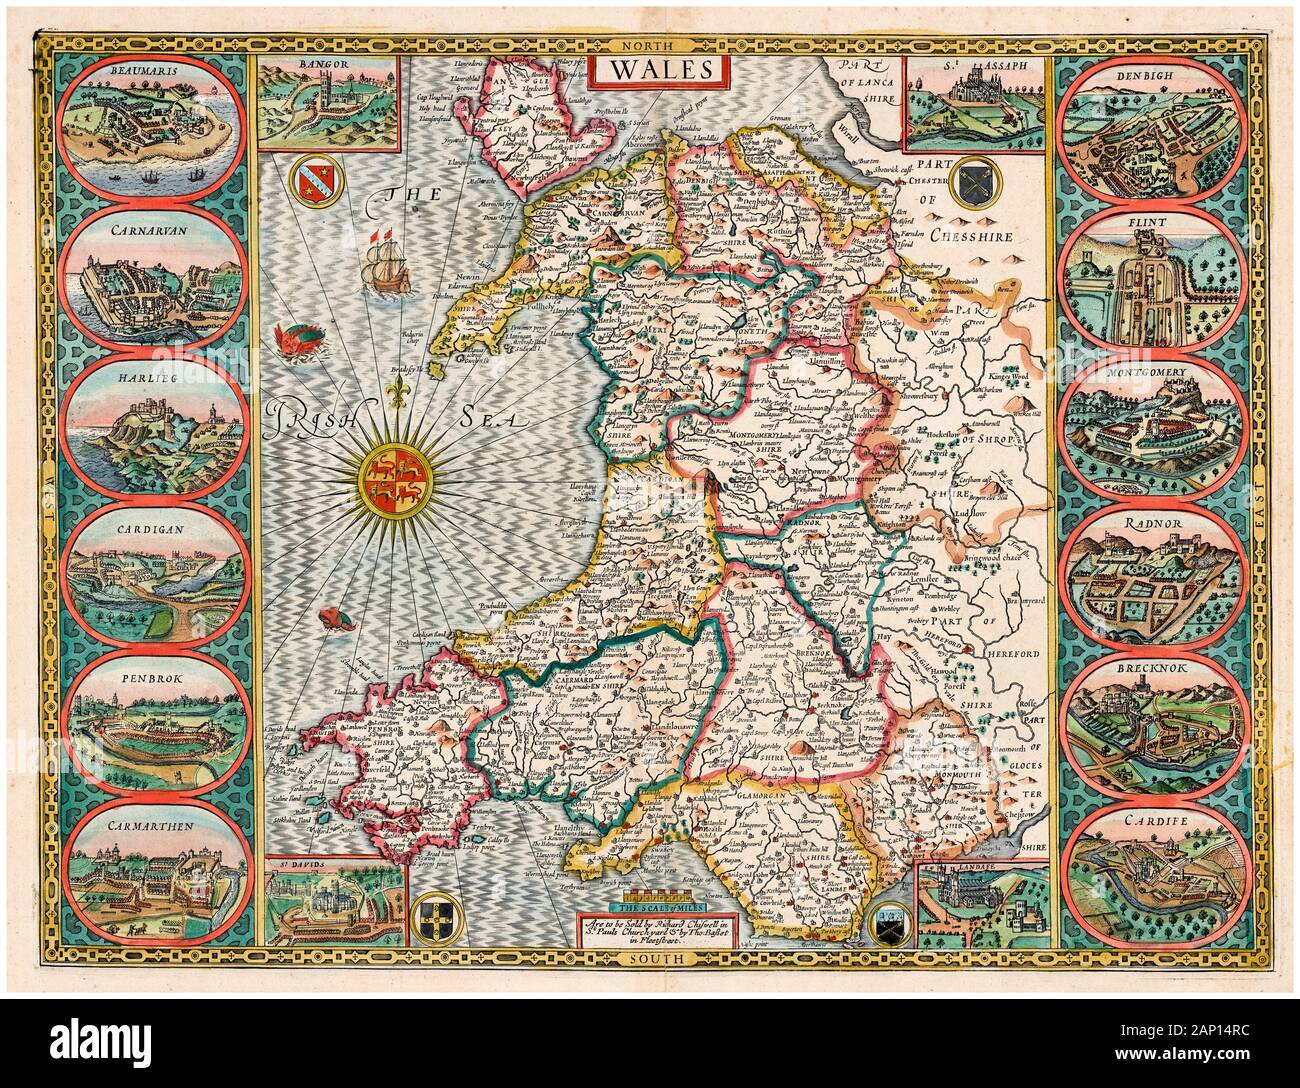 Alte vintage Karte von Wales, Anfang des 17. Jahrhunderts, Illustration von John Speed, 1610 Stockfoto